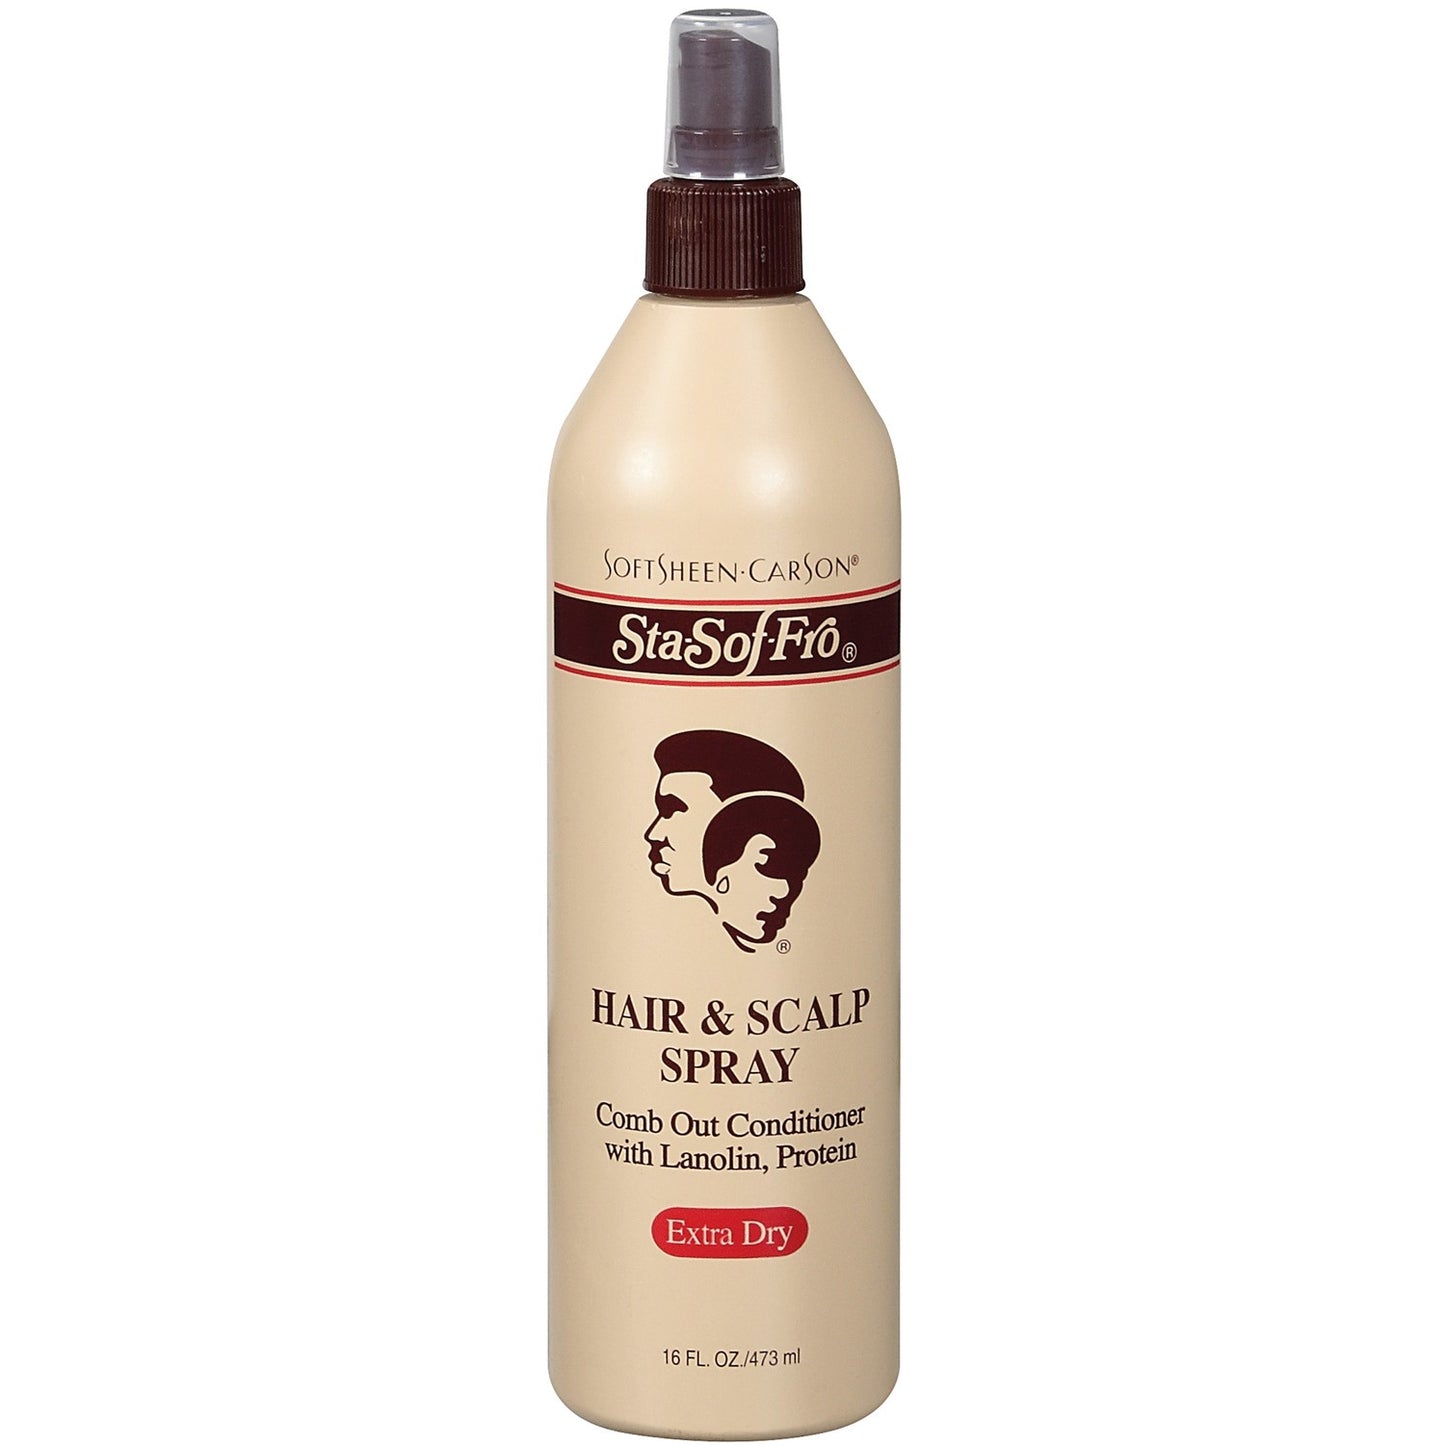 Softsheen Carson: Sta-sof-fro Hair & Scalp Spray